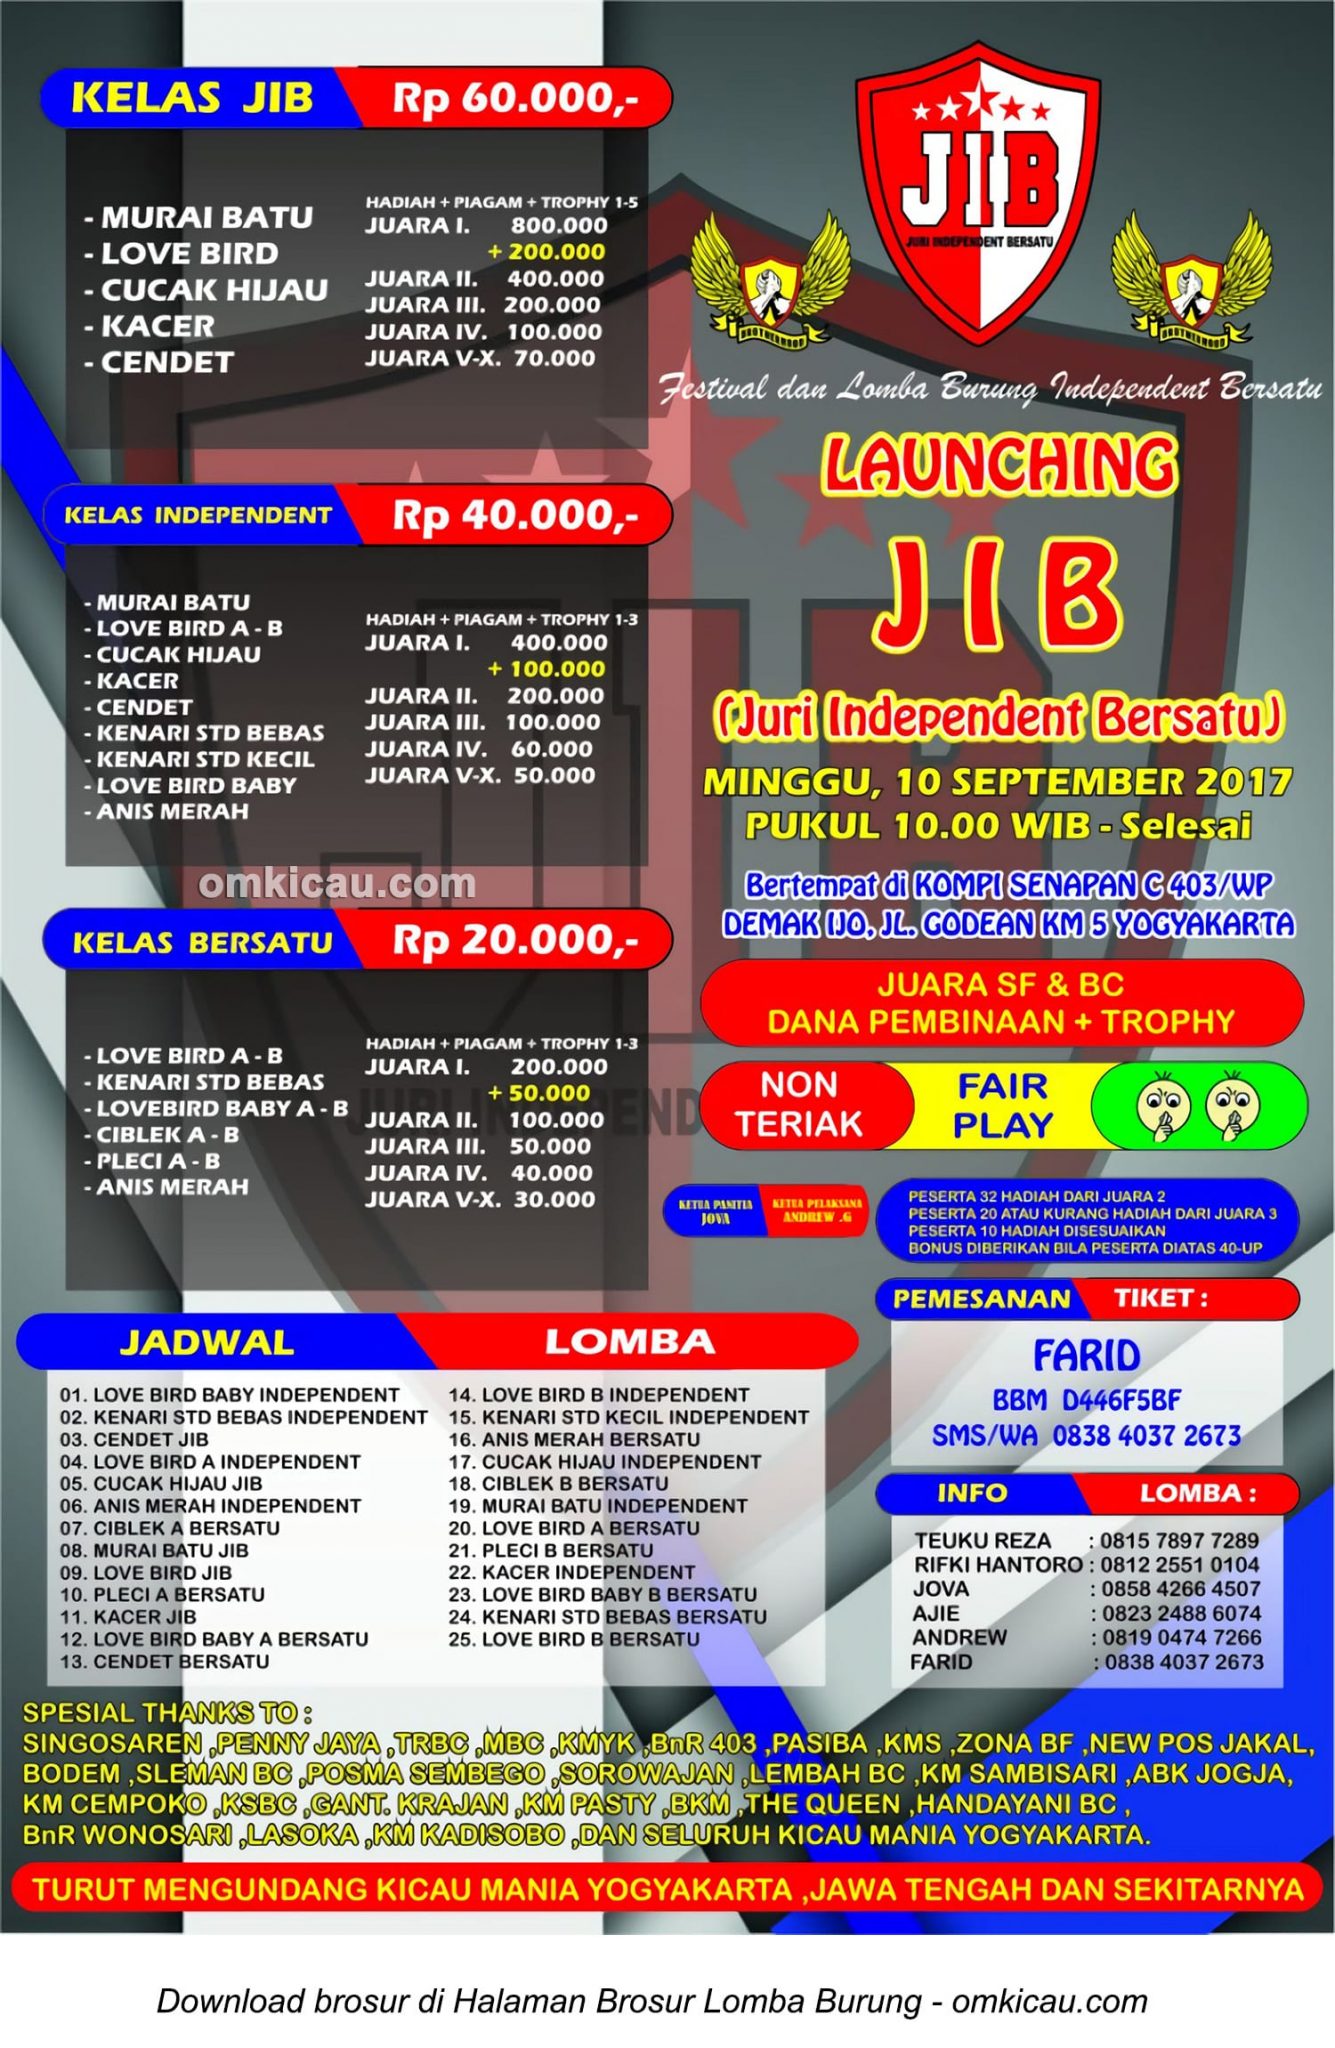 Launching JIB Juri Independent Bersatu di Jogja Minggu 